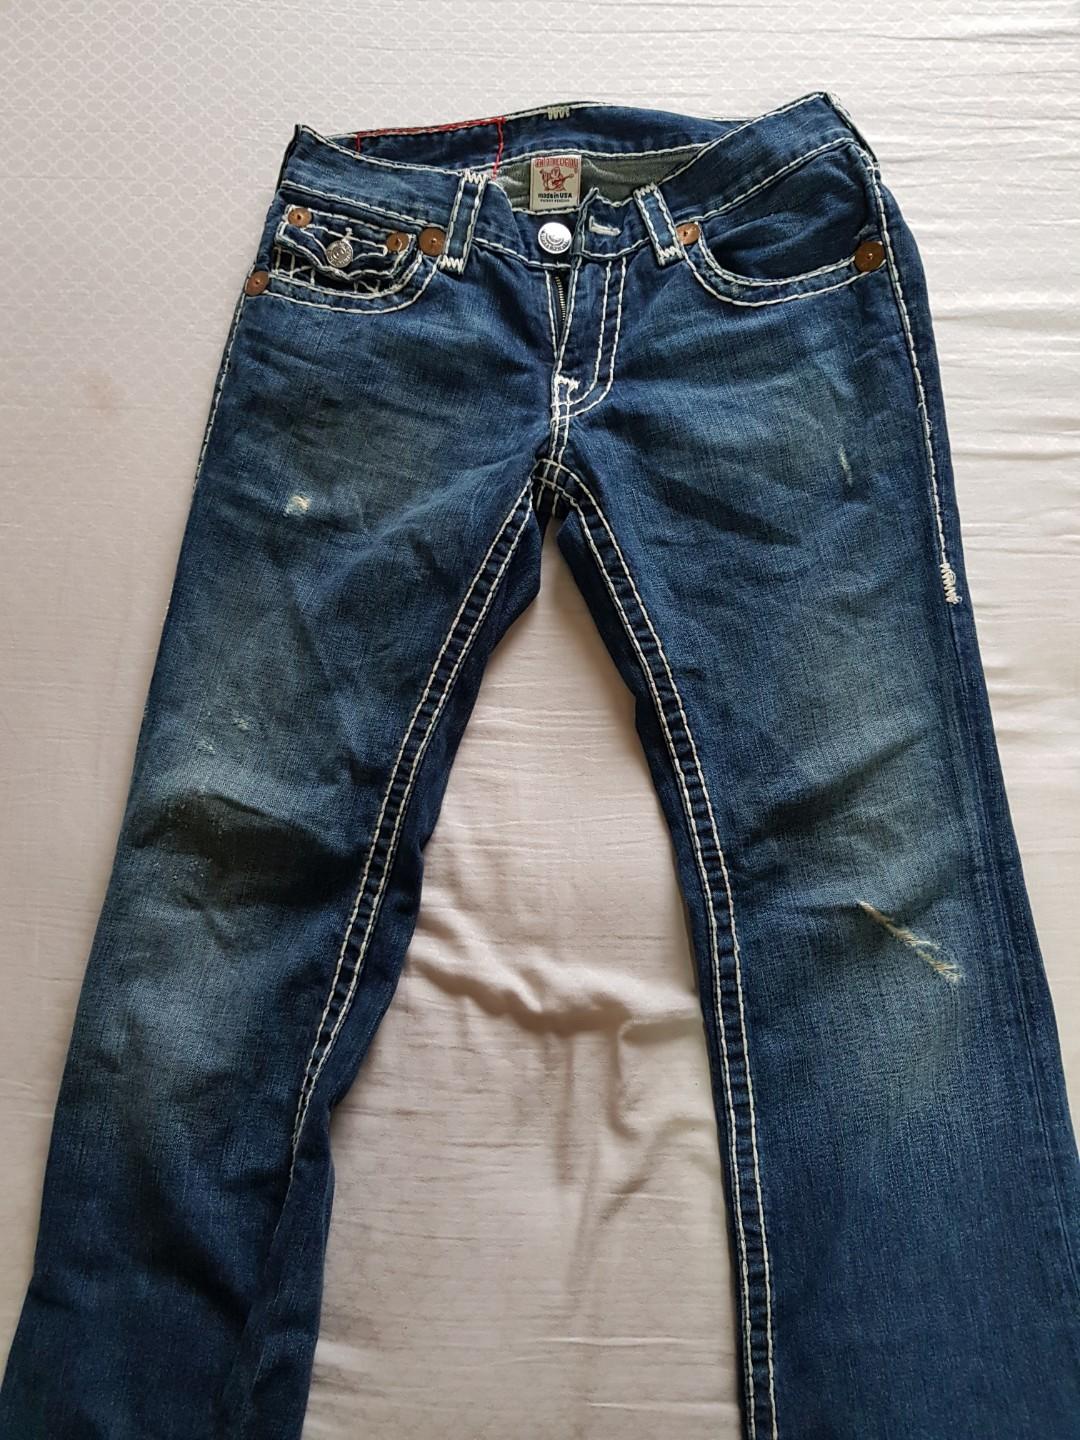 jeans true religion price